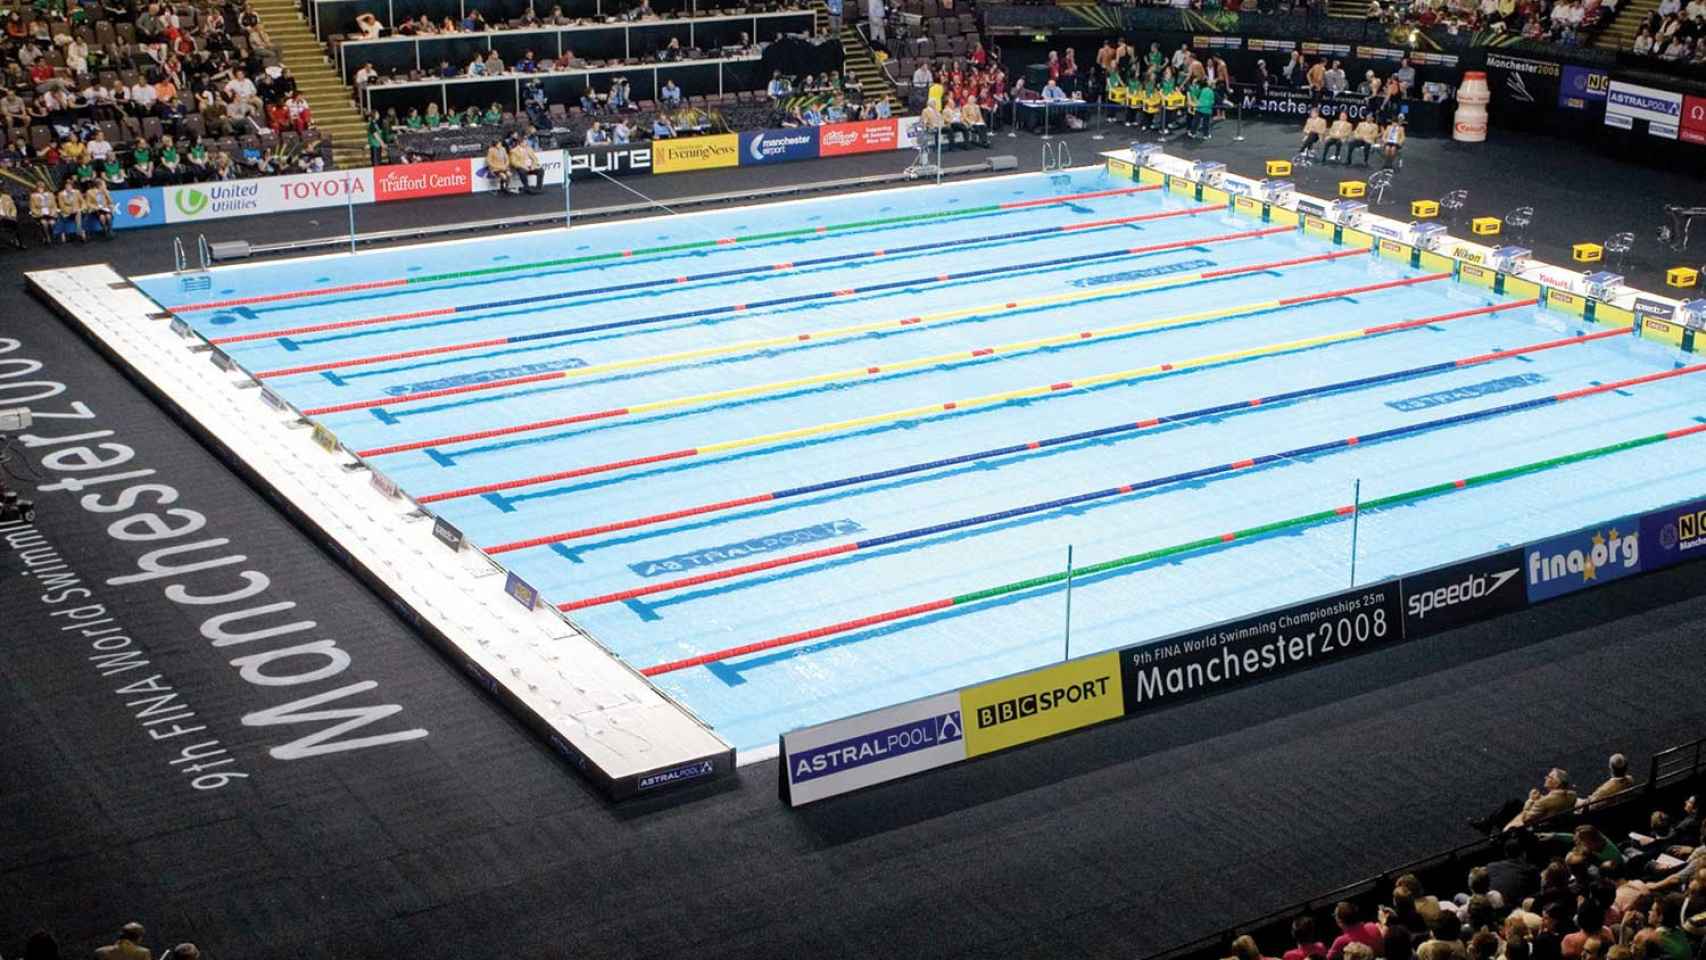 Una de las piscinas de natación que instaló Fluidra para el mundial de Manchester en 2008 / CG